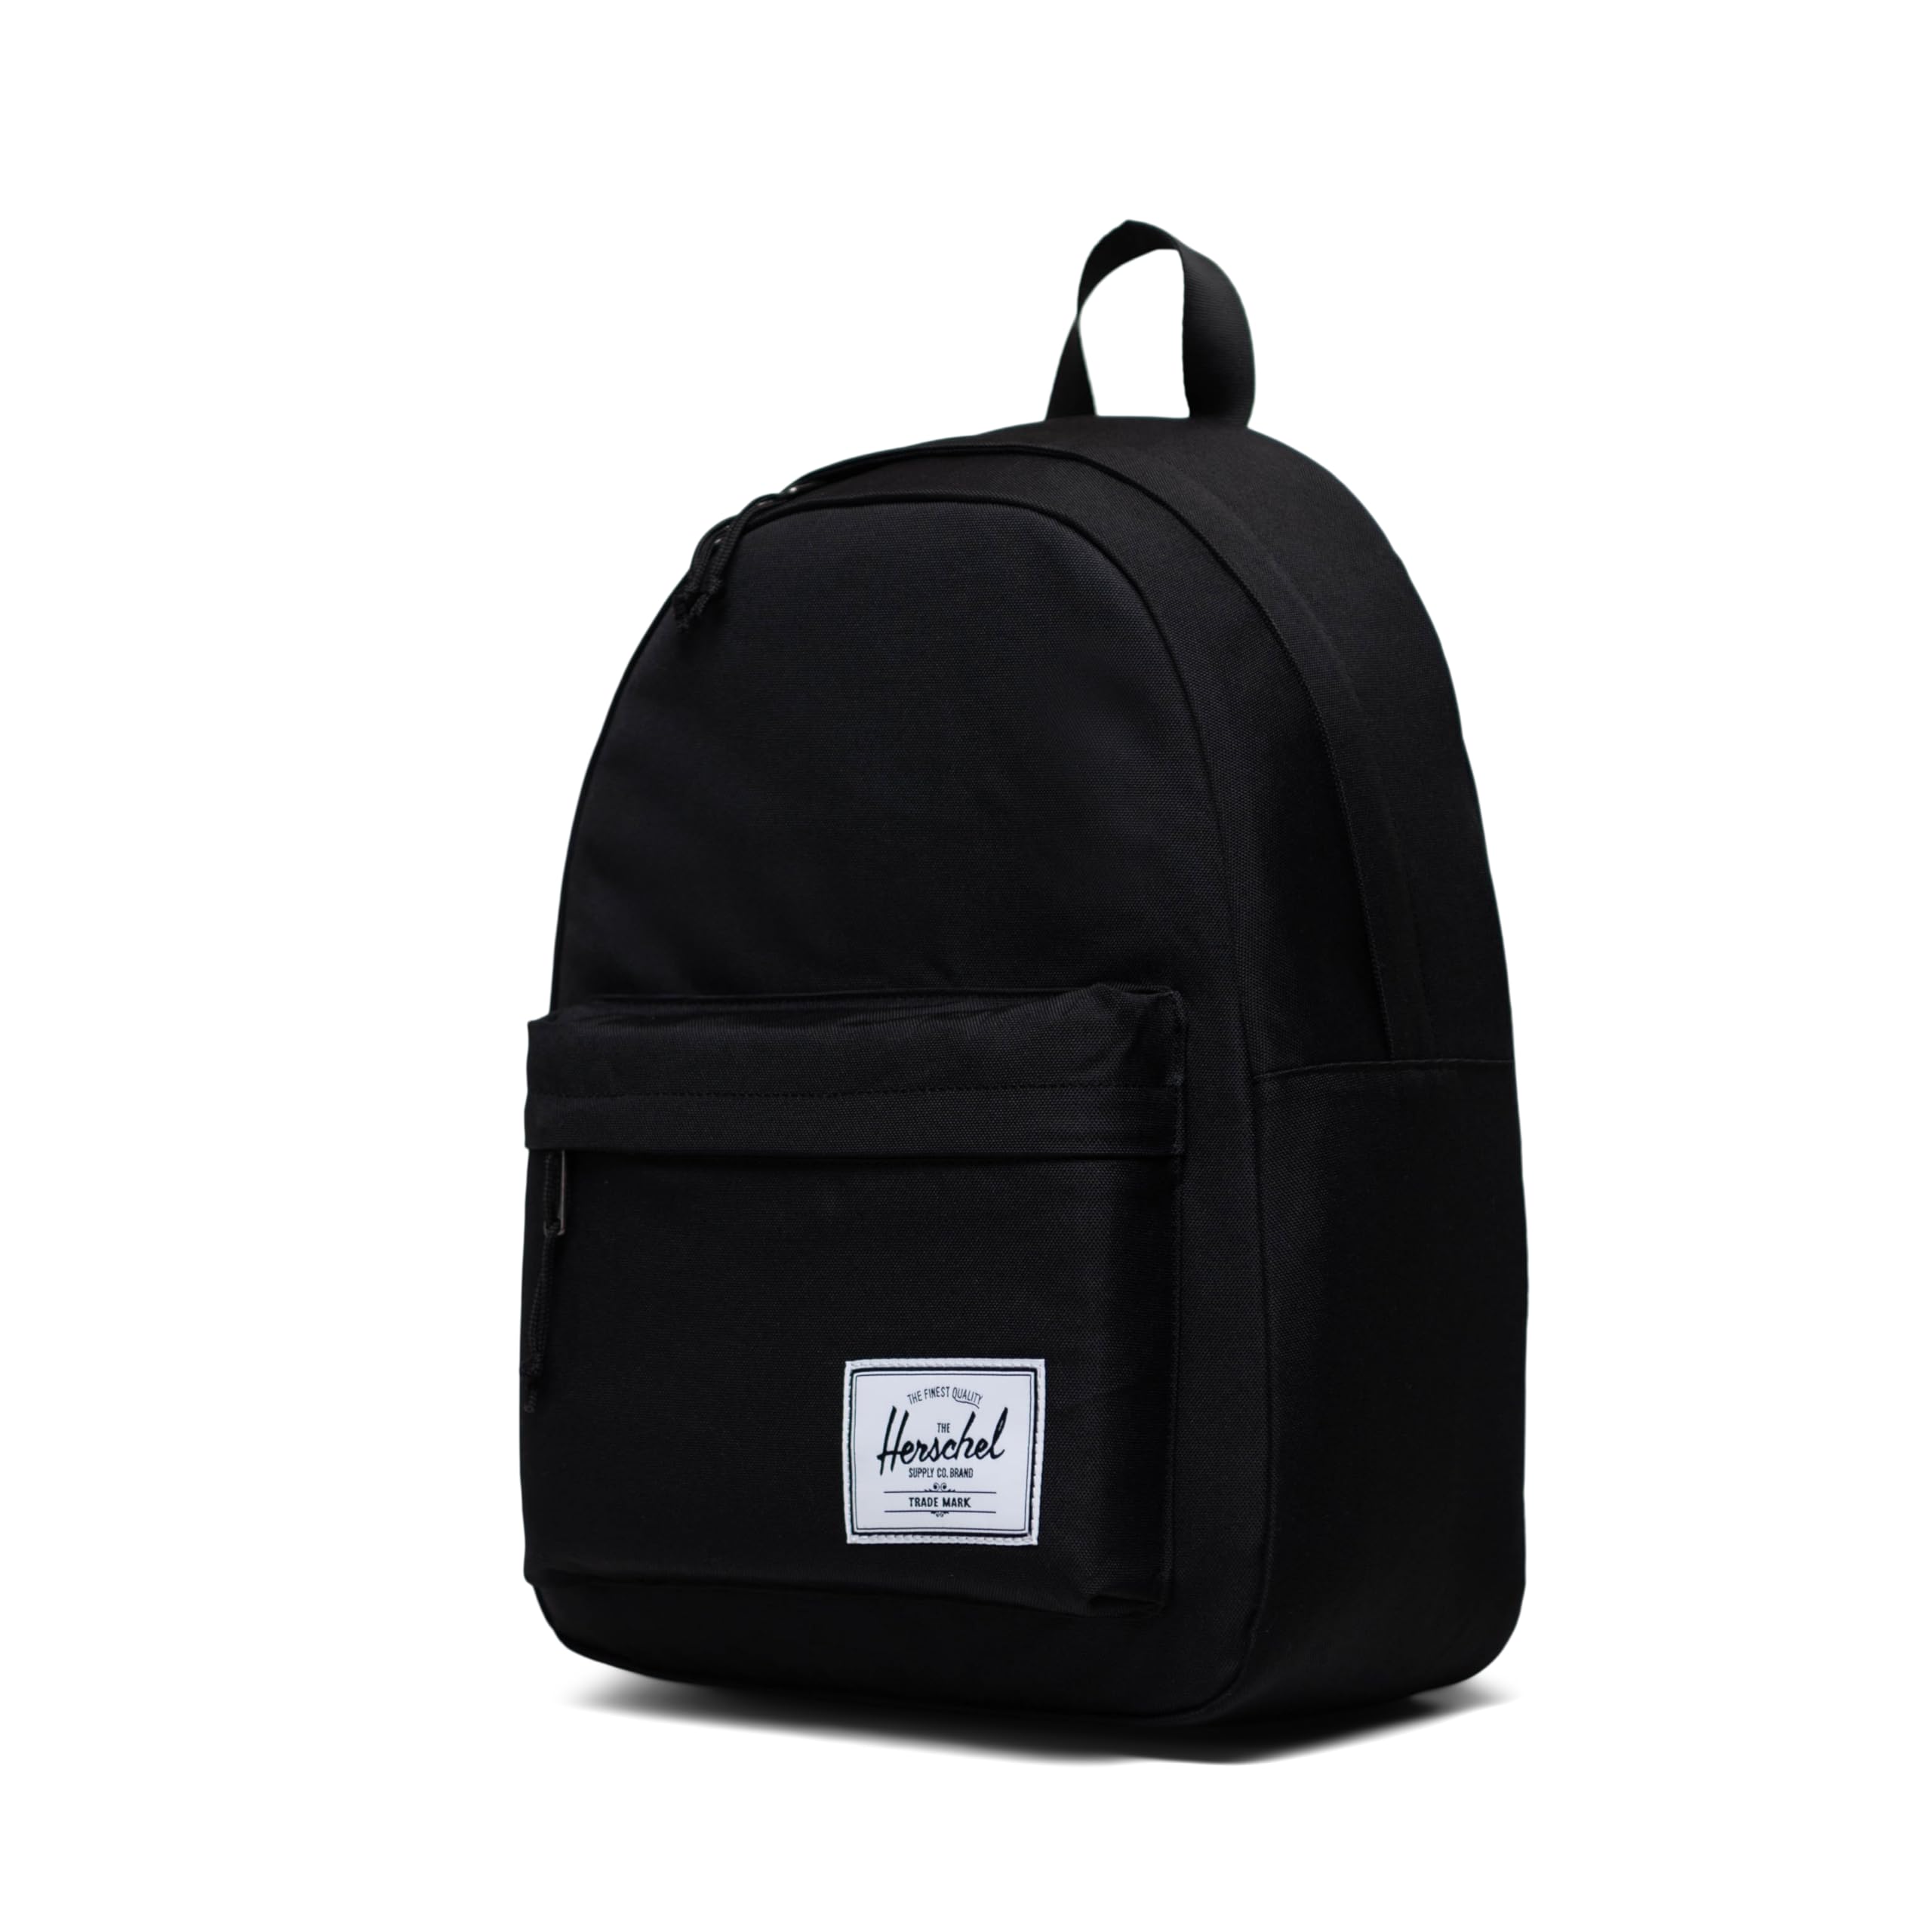 Herschel Supply Co. Herschel Classic Backpack, Black, One Size